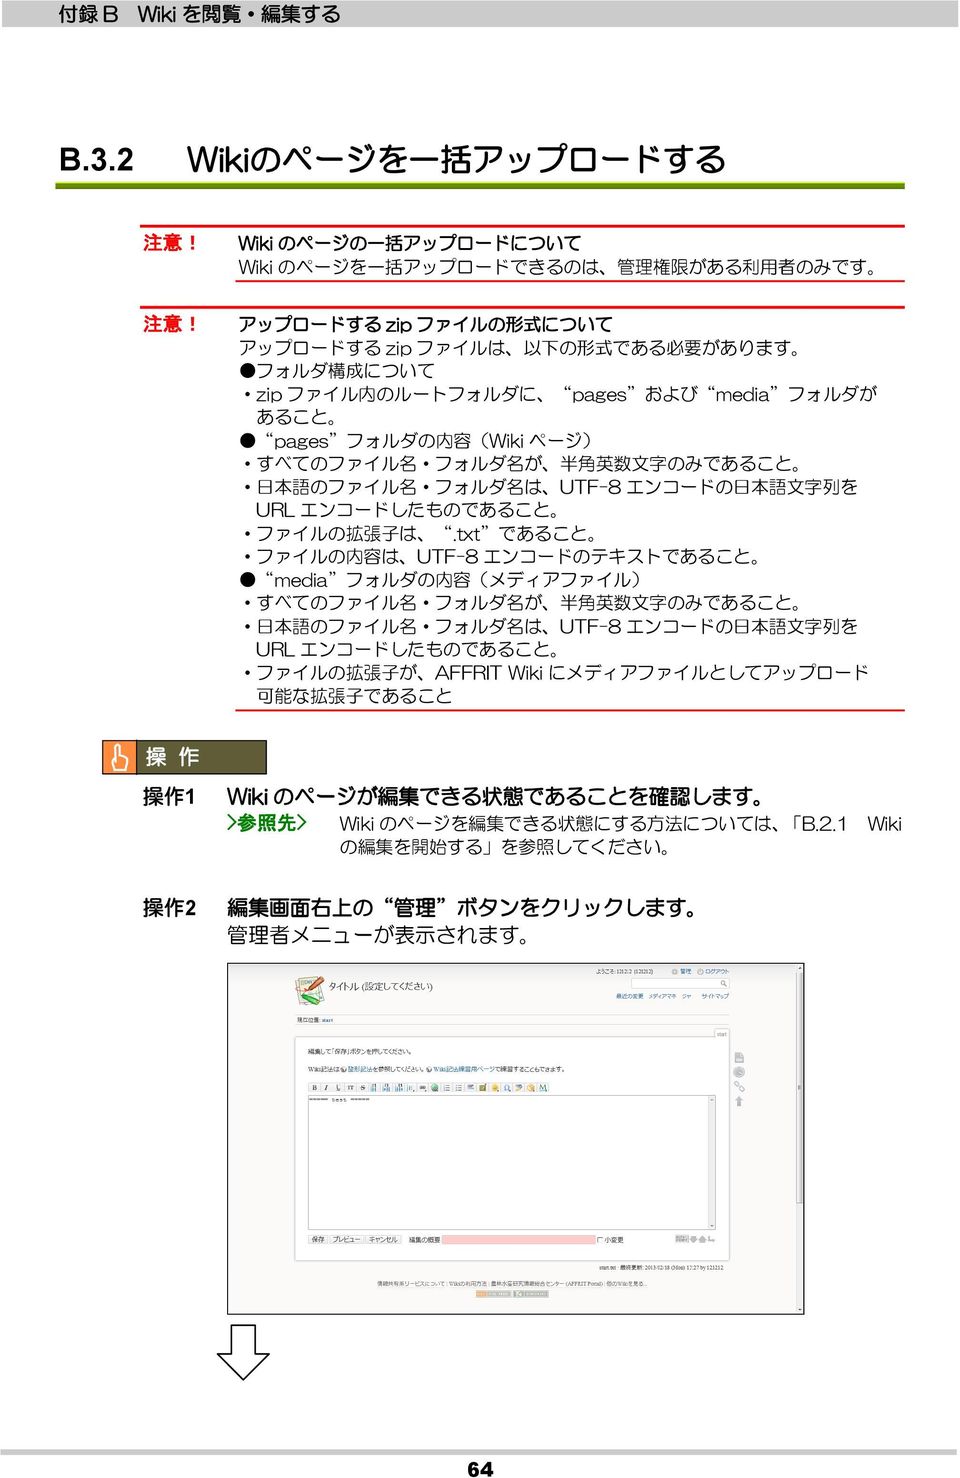 日 本 語 のファイル 名 フォルダ 名 は UTF-8 エンコードの 日 本 語 文 字 列 を URL エンコードしたものであること ファイルの 拡 張 子 は.